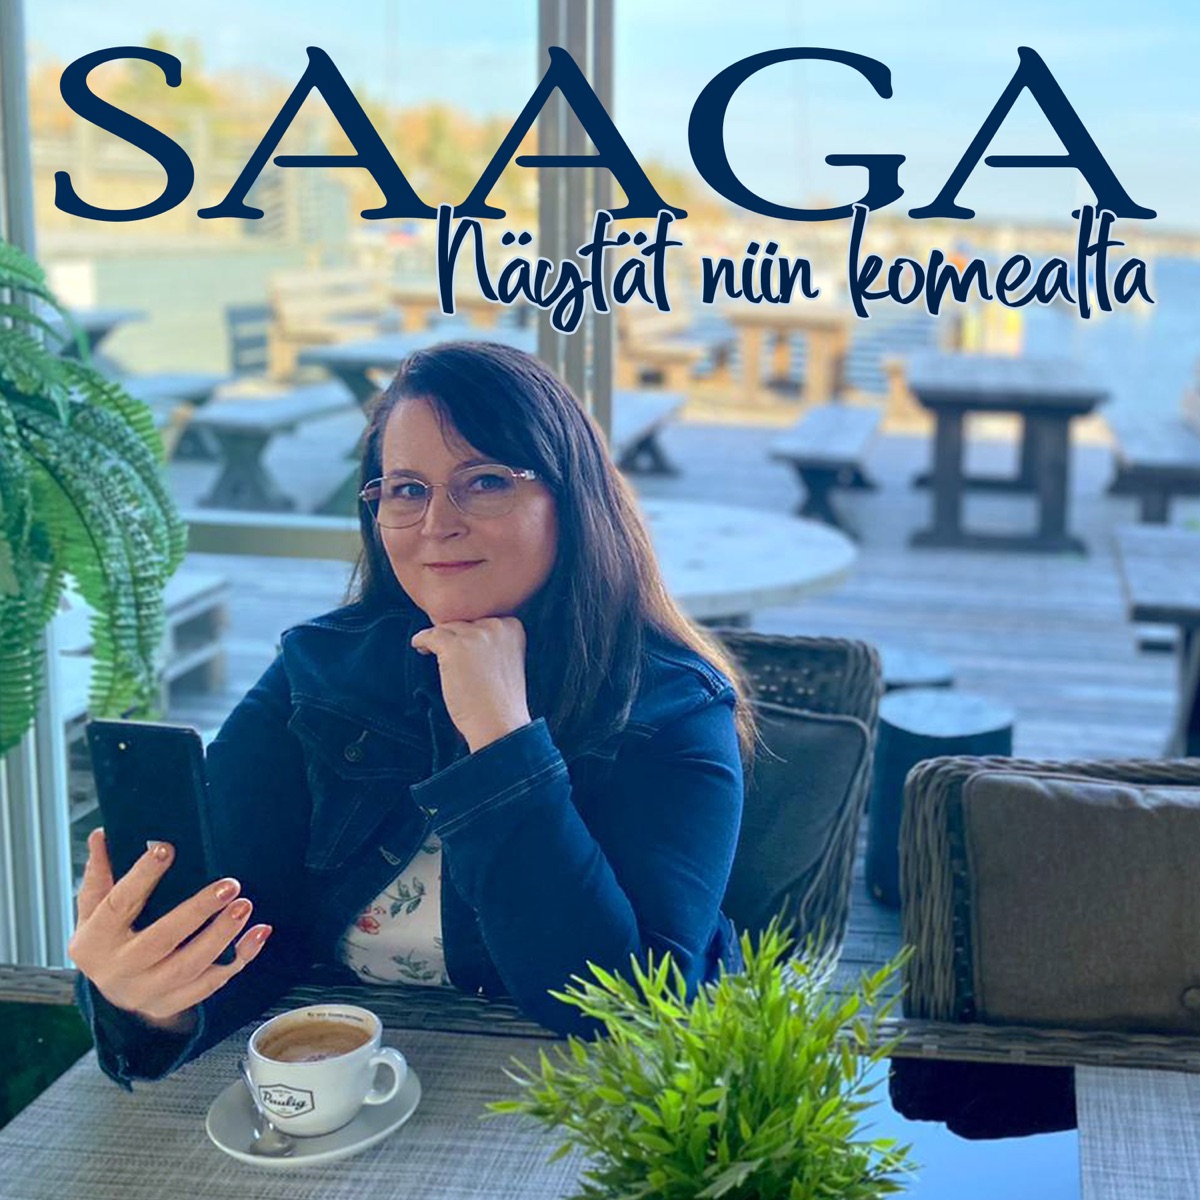 Näytät niin komealta - Single - Album by Saaga - Apple Music